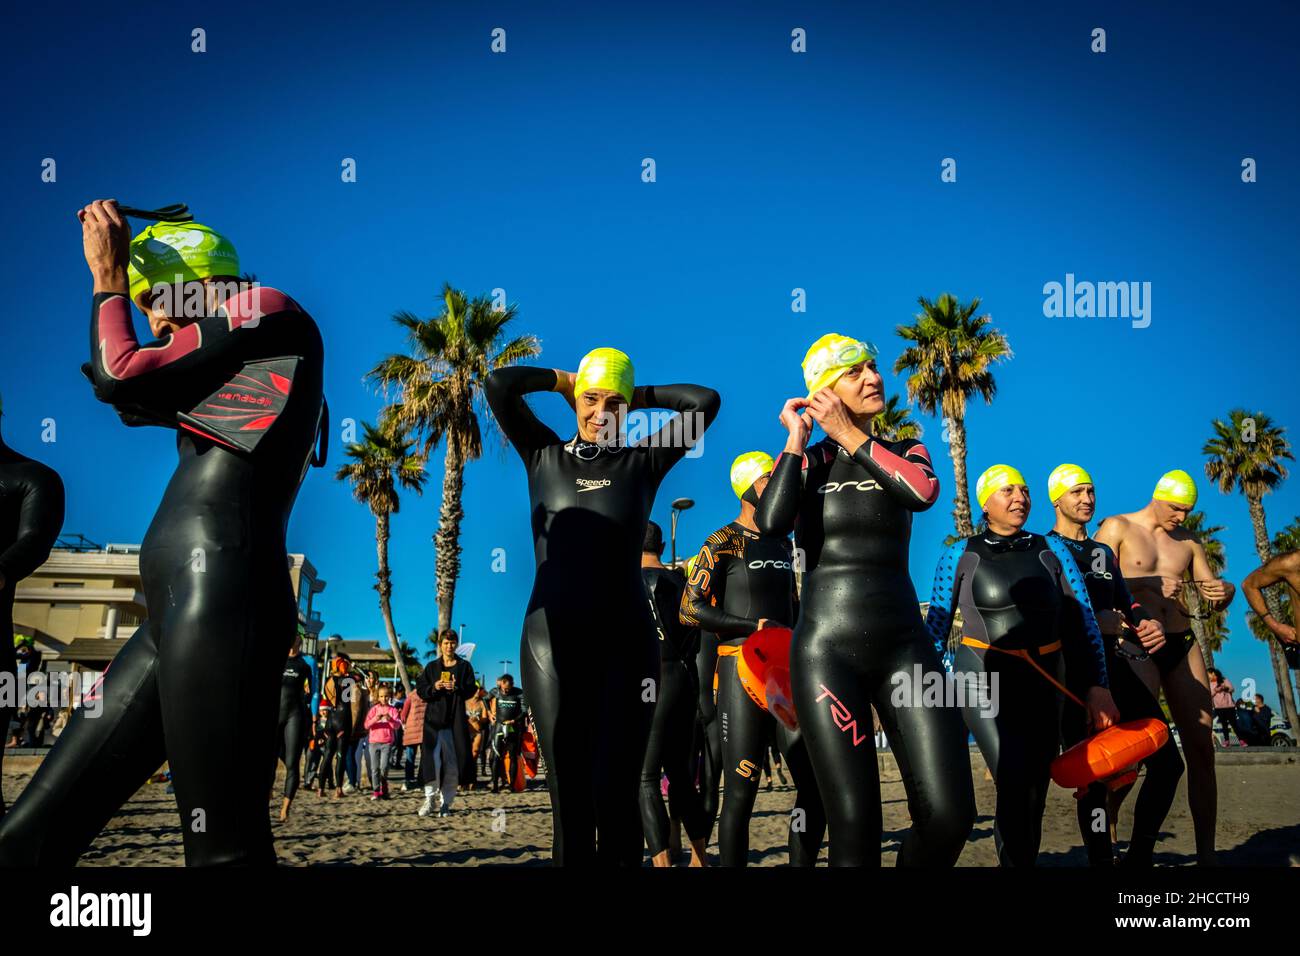 Valencia, Spagna; 12th dicembre 2021: I nuotatori celebrano una traversata invernale durante la Nuova normalità Foto Stock